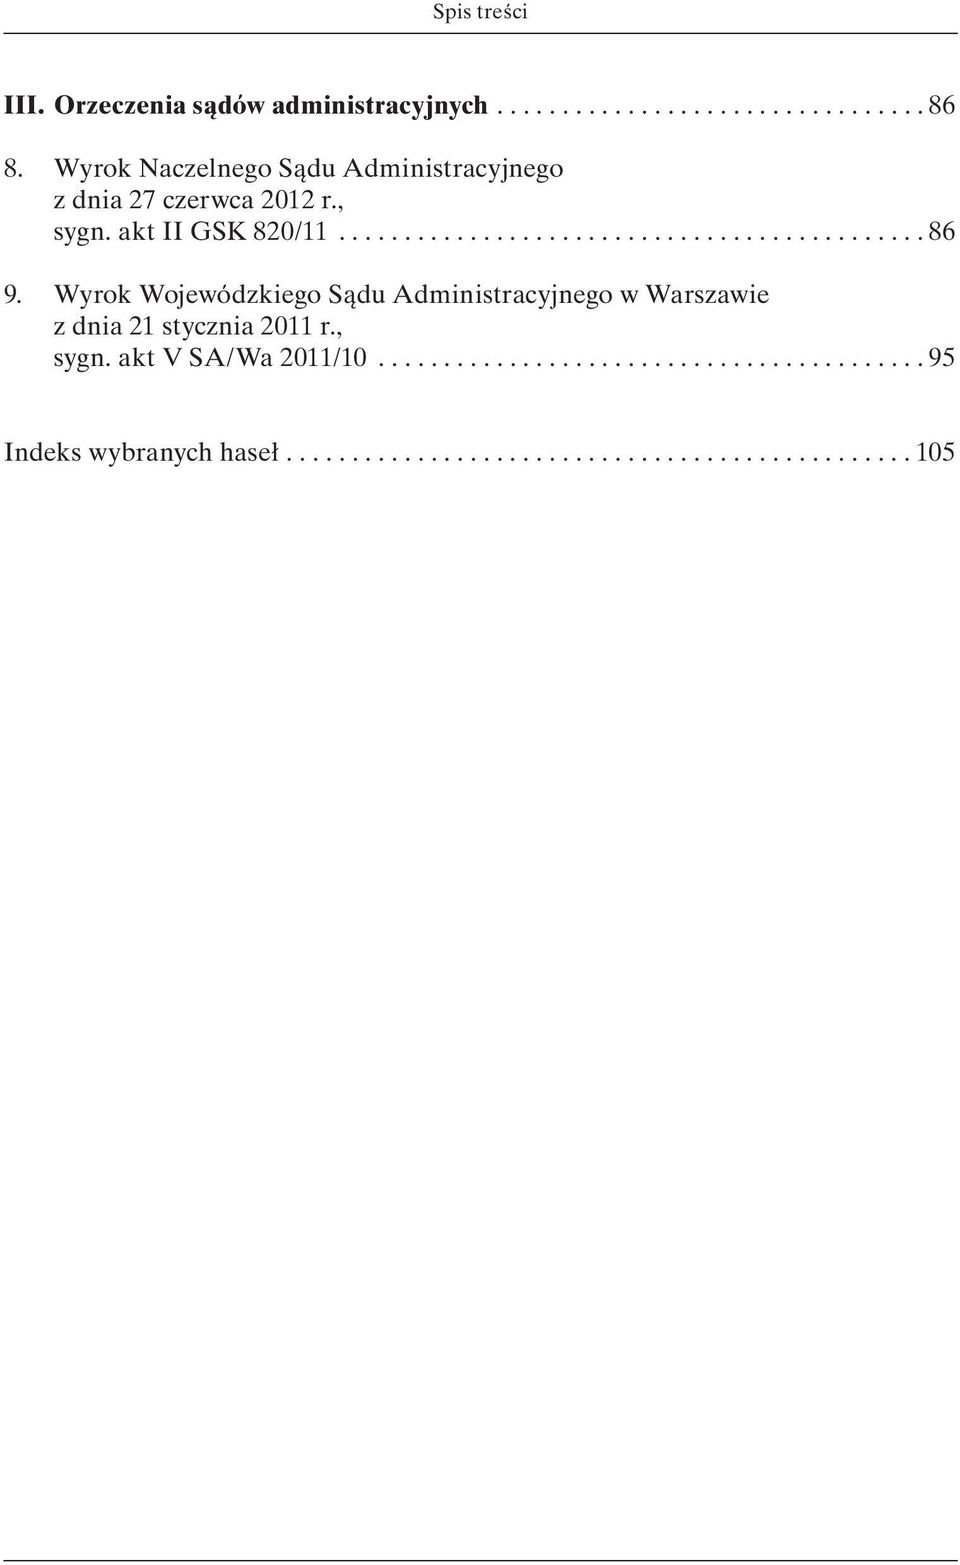 Wyrok Wojewódzkiego Sądu Administracyjnego w Warszawie z dnia 21 stycznia 2011 r., sygn. akt V SA/Wa 2011/10.